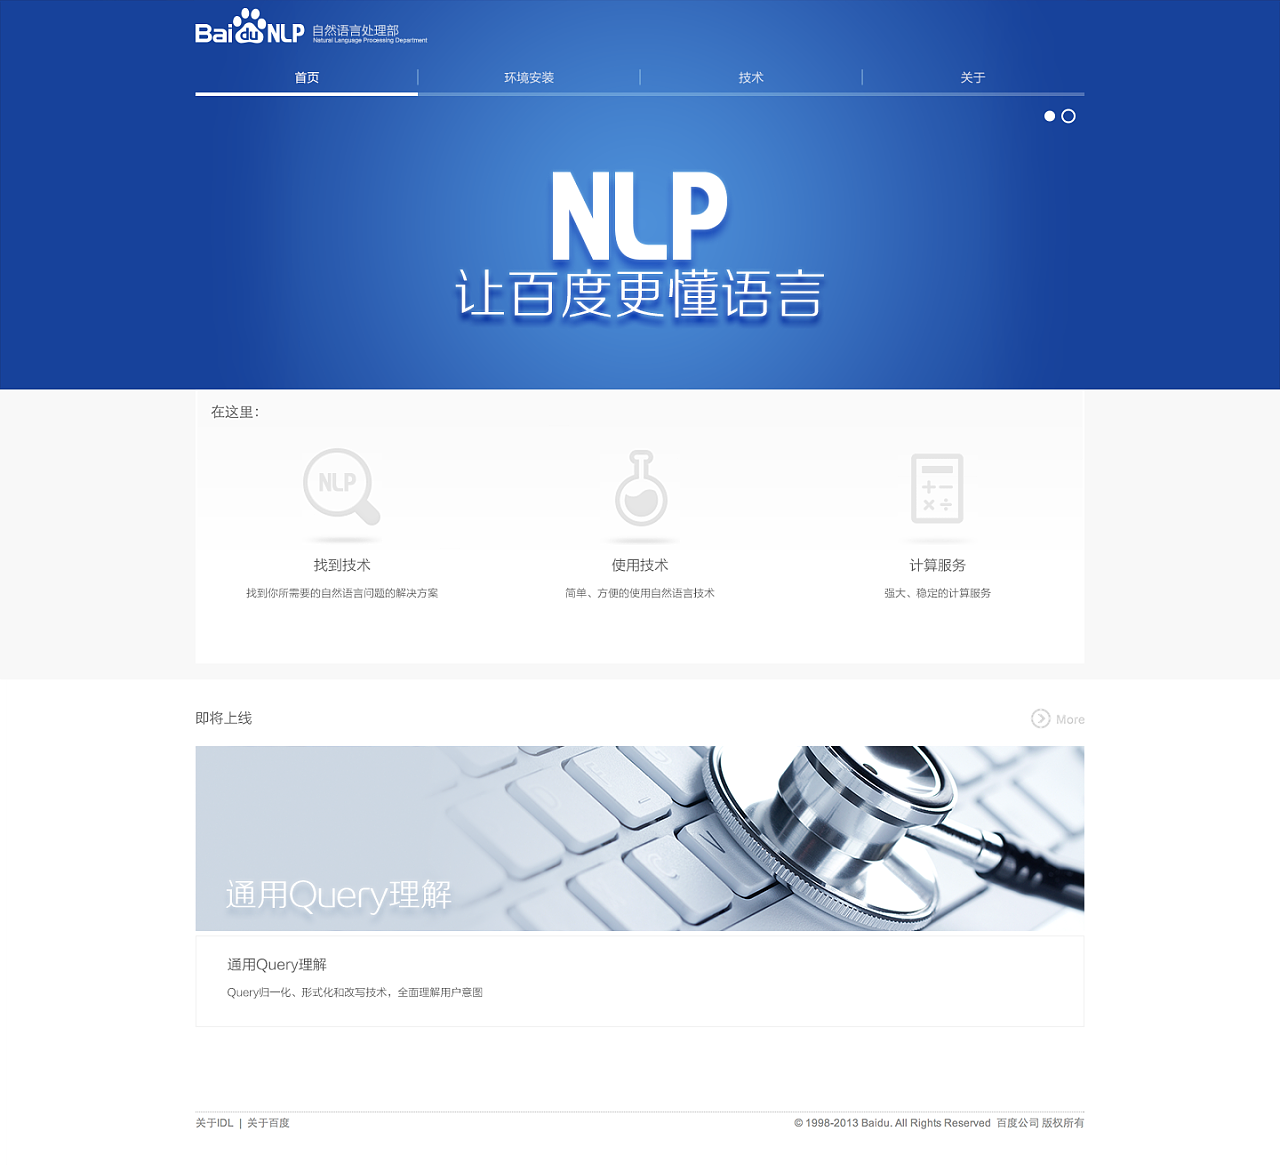 百度 NLP 云平台(自然语言处理部)|网页|企业官